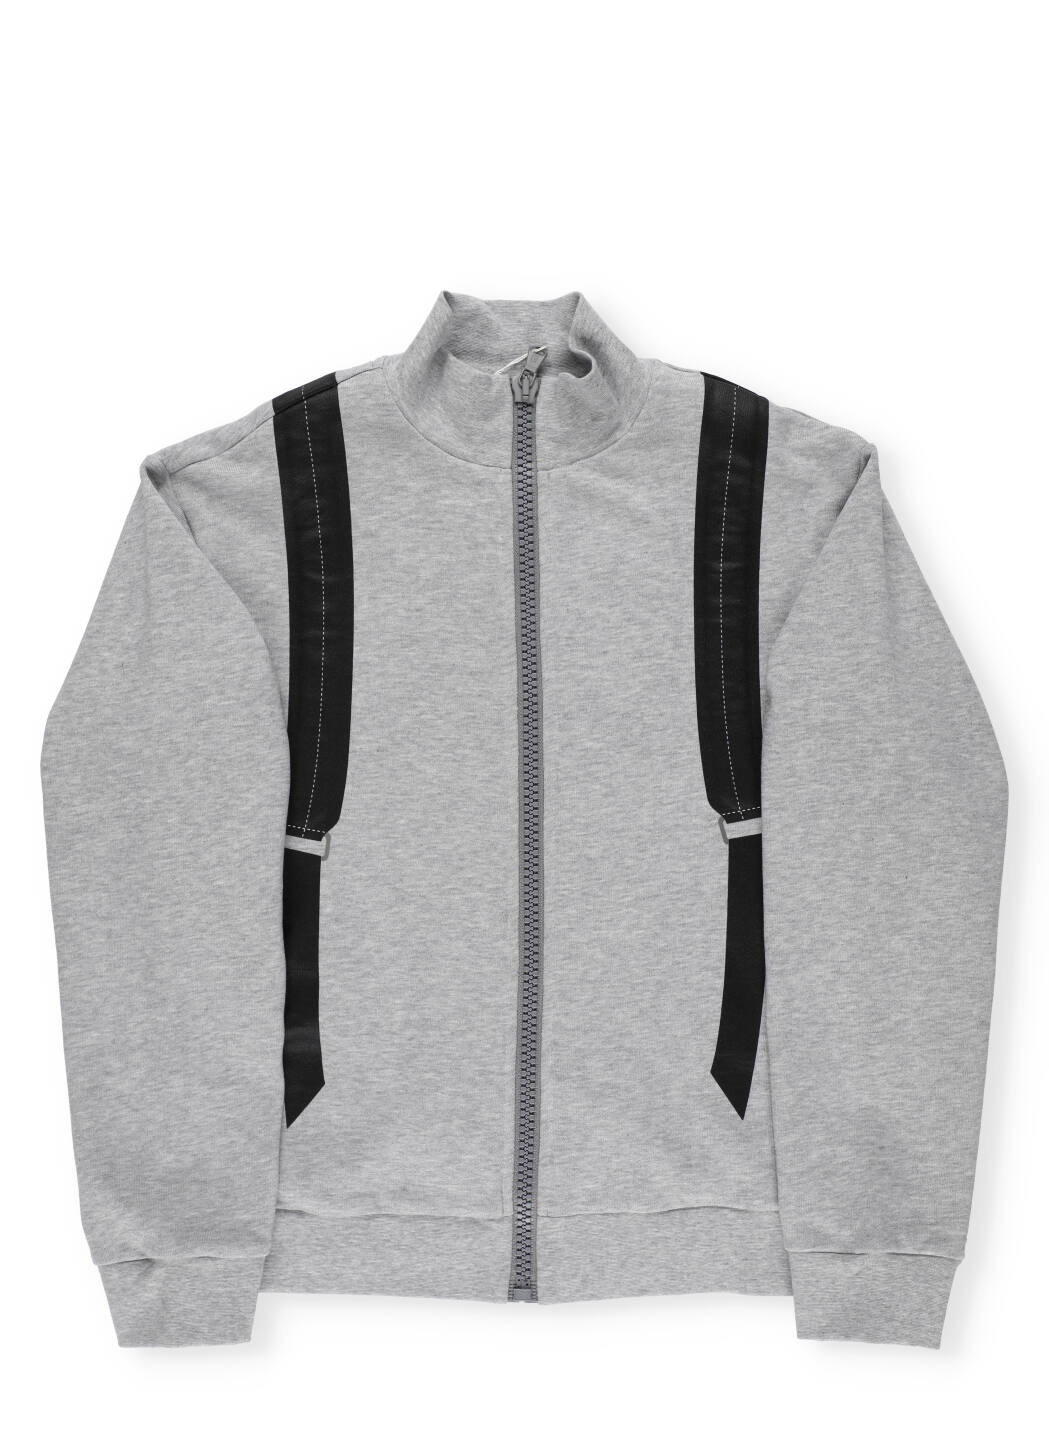 Fendi Sweatshirt With Backpack Print